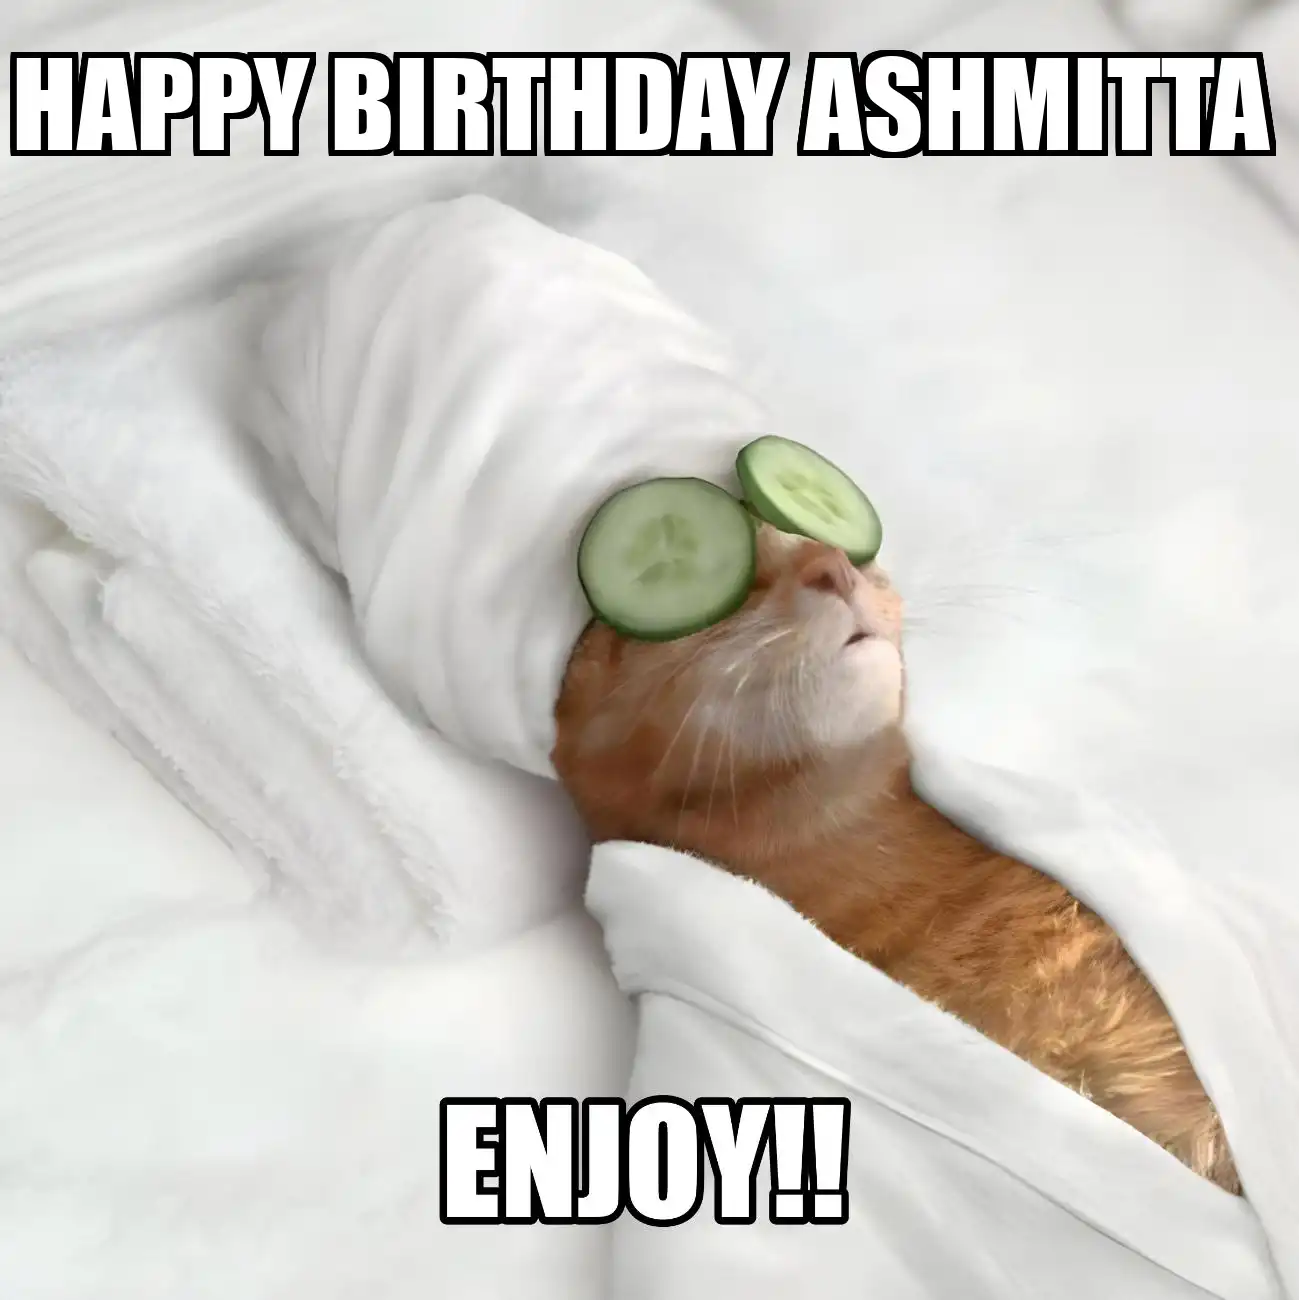 Happy Birthday Ashmitta Enjoy Cat Meme